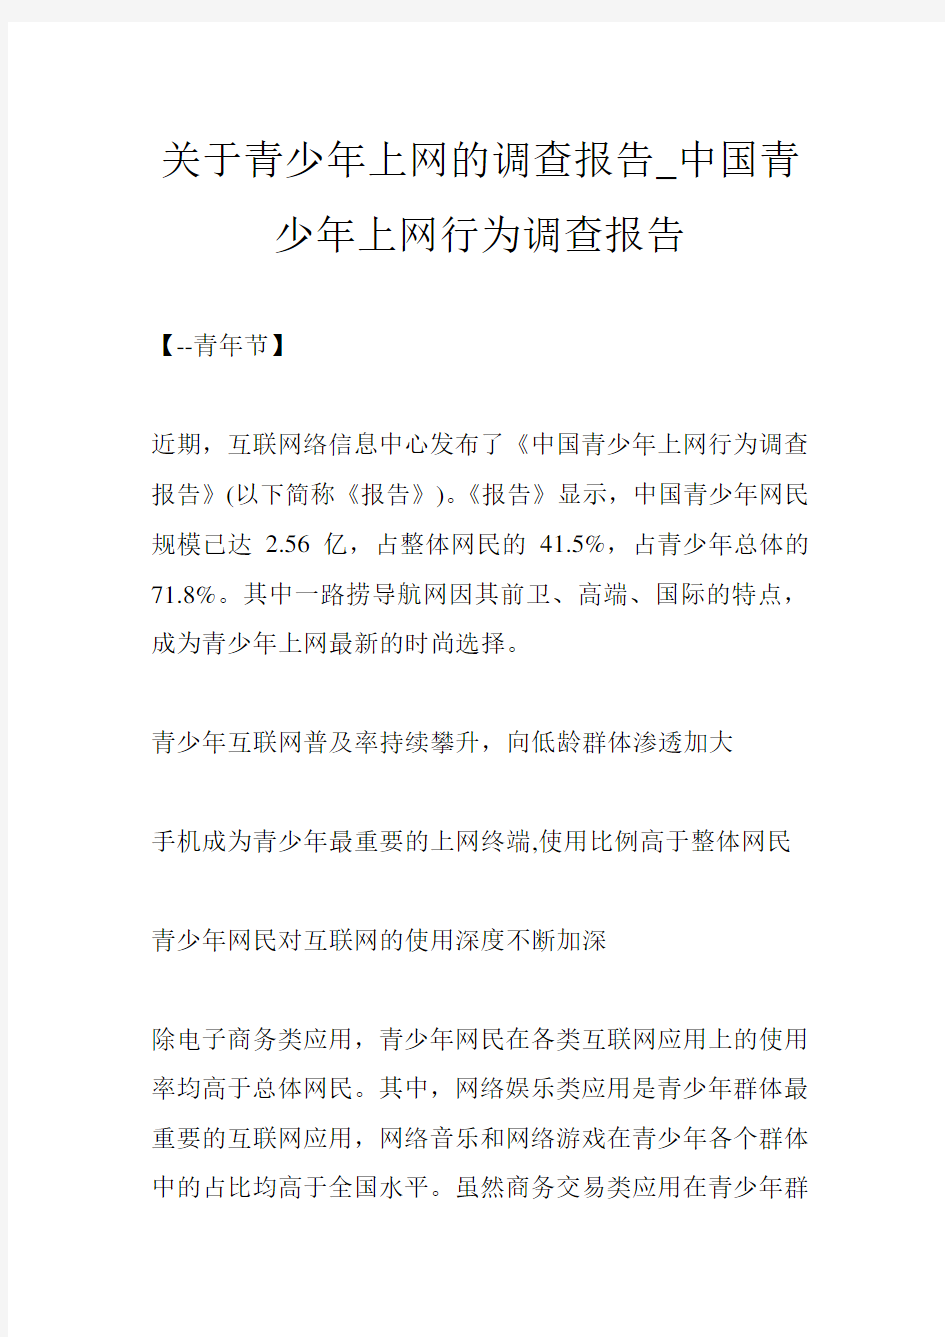 关于青少年上网的调查报告_中国青少年上网行为调查报告